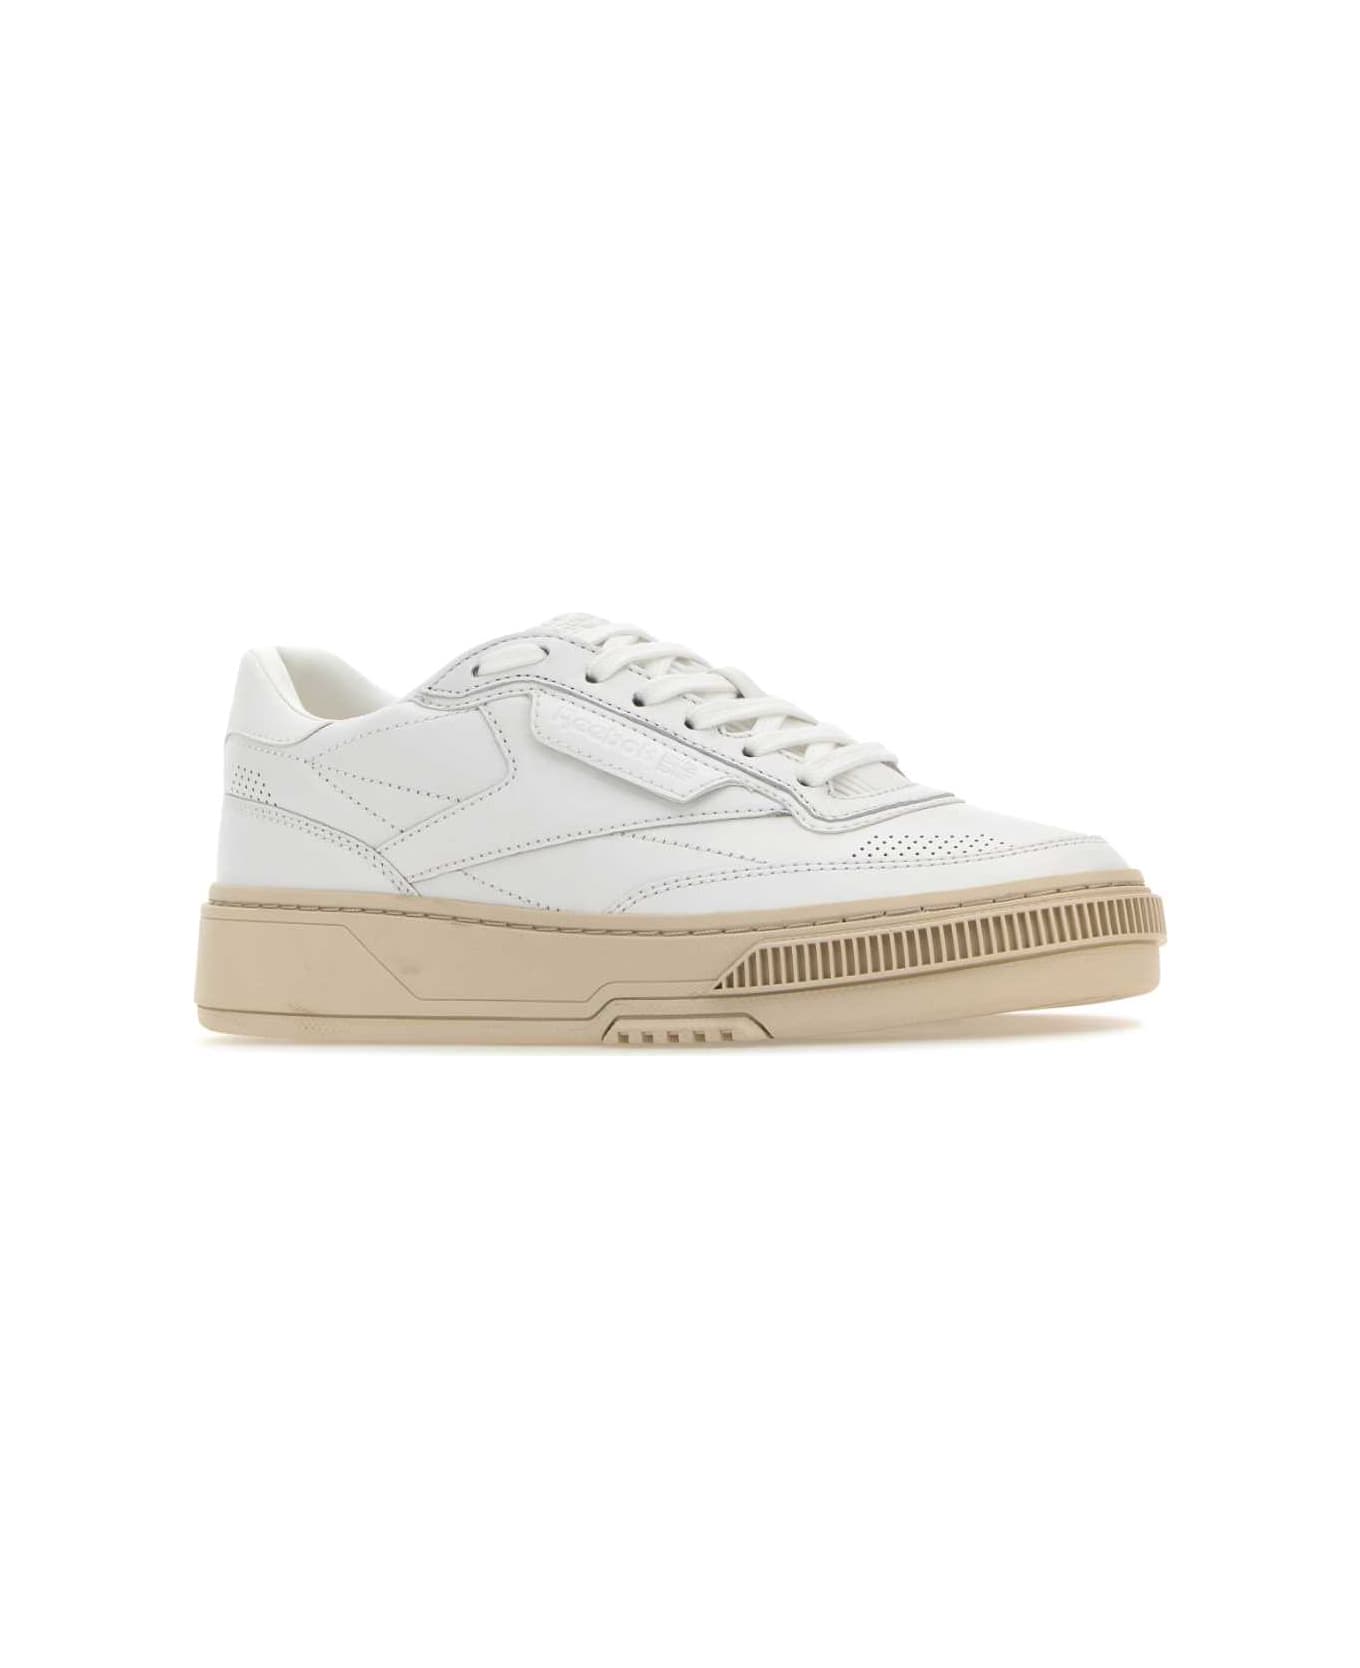 Reebok White Leather Club C Ltd Sneakers - White